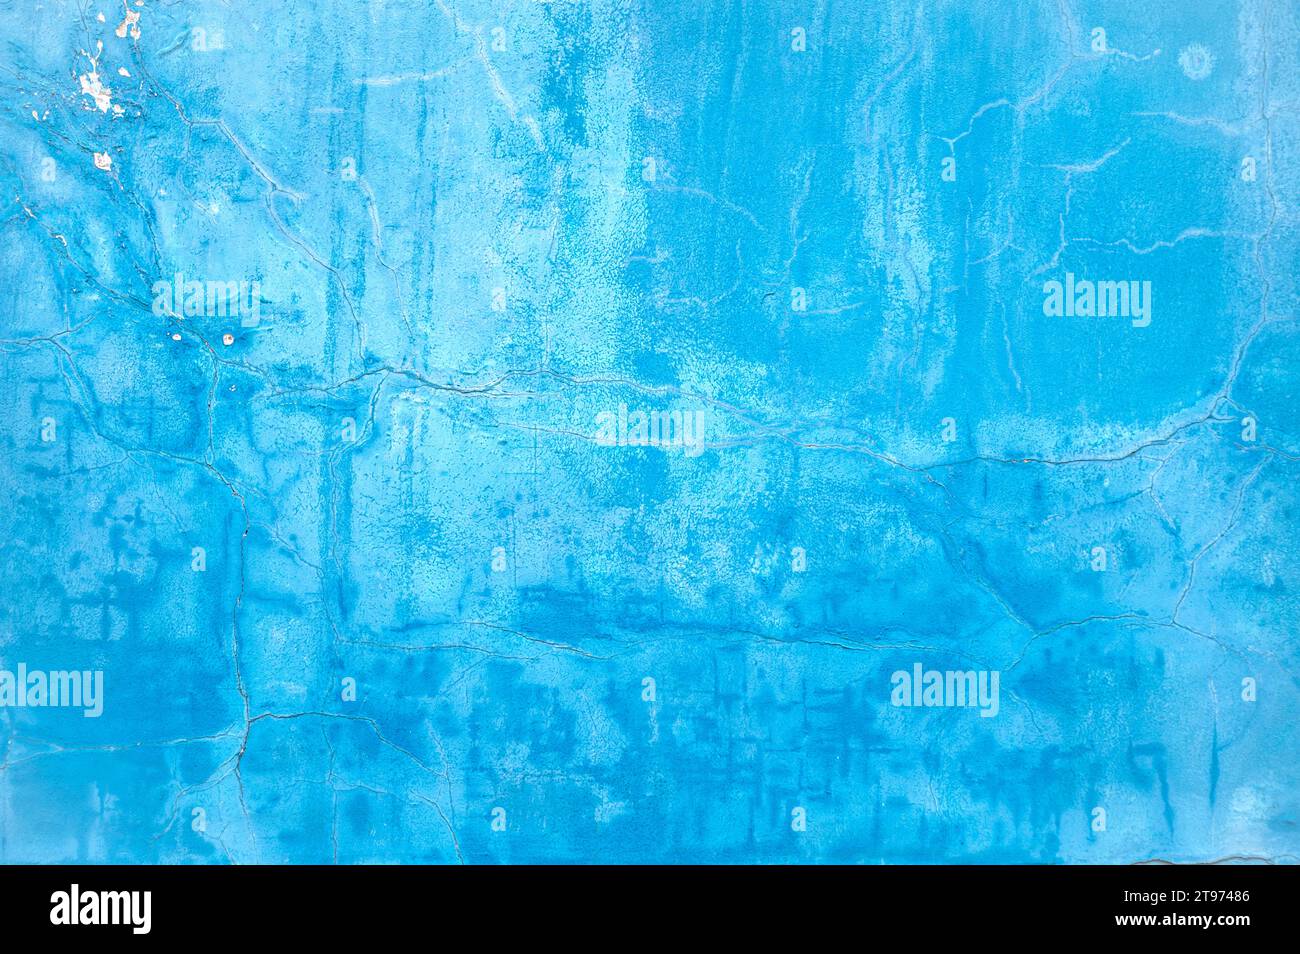 Wand mit hellblauer Farbe auf der Oberfläche, beschädigte gerissene Oberfläche als Textur oder Hintergrund Stockfoto